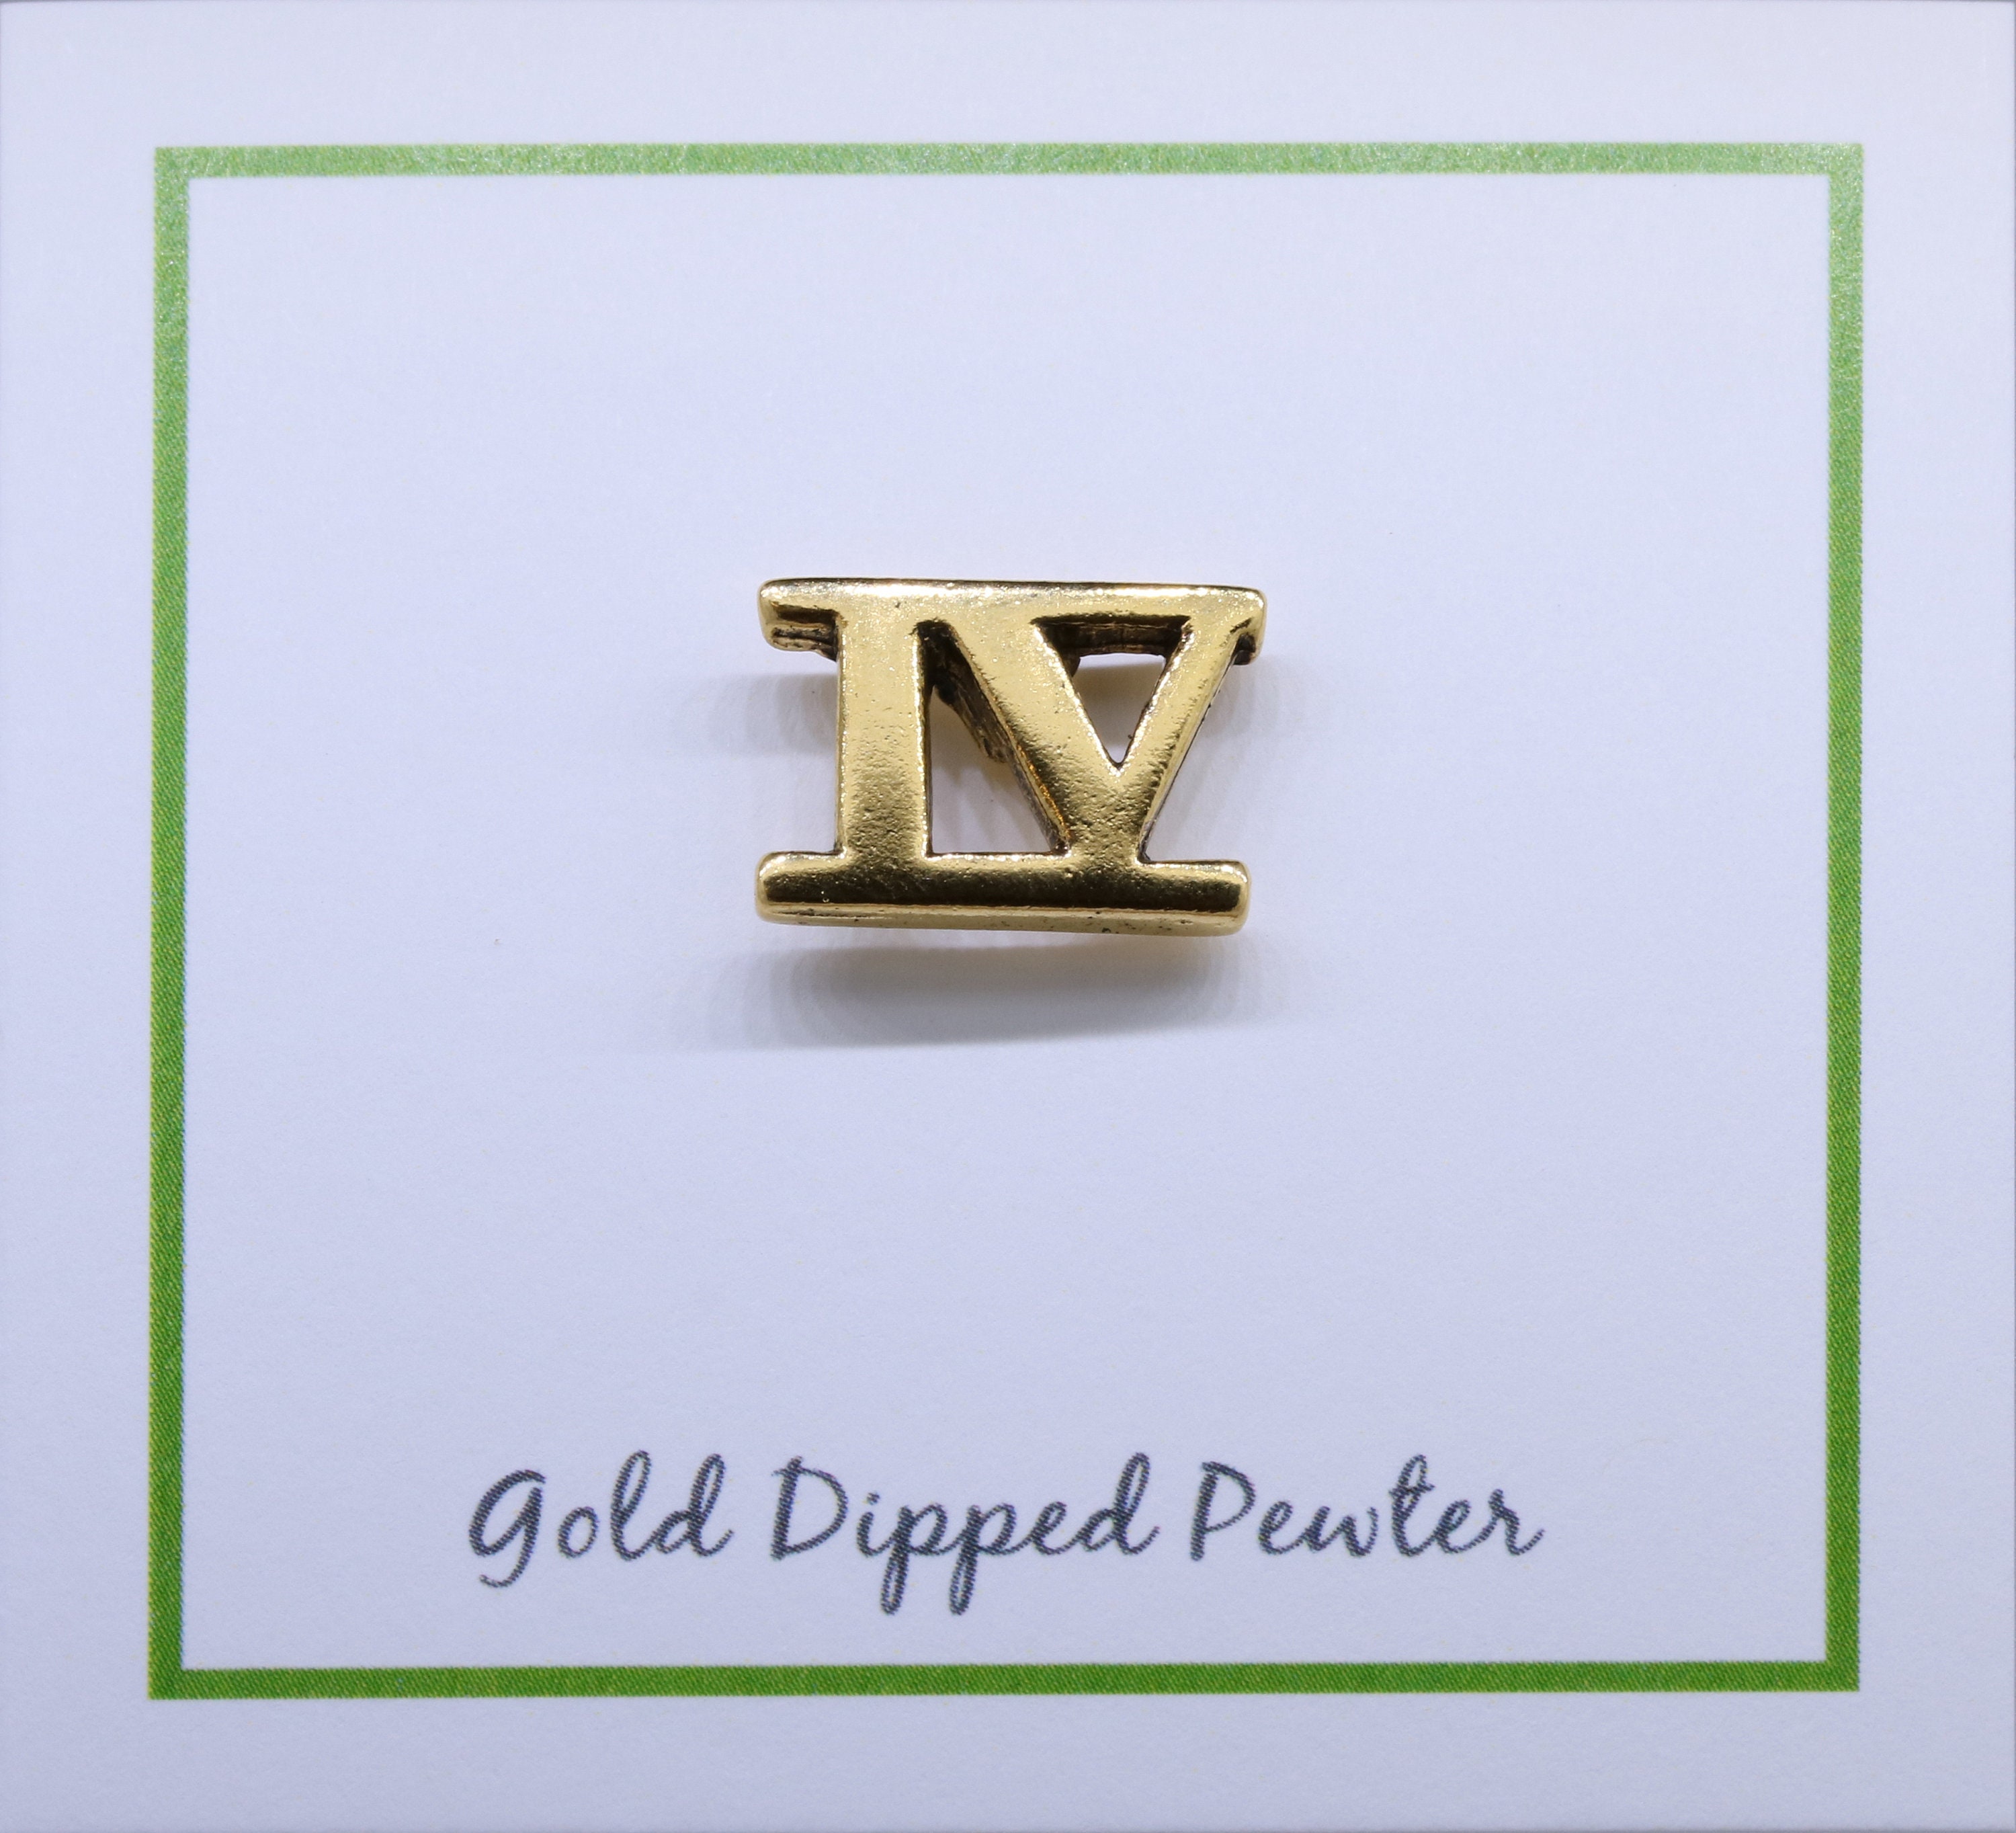 Roman Numeral 6 Gold Lapel Pin CC609G-VI Roman Numerals and 